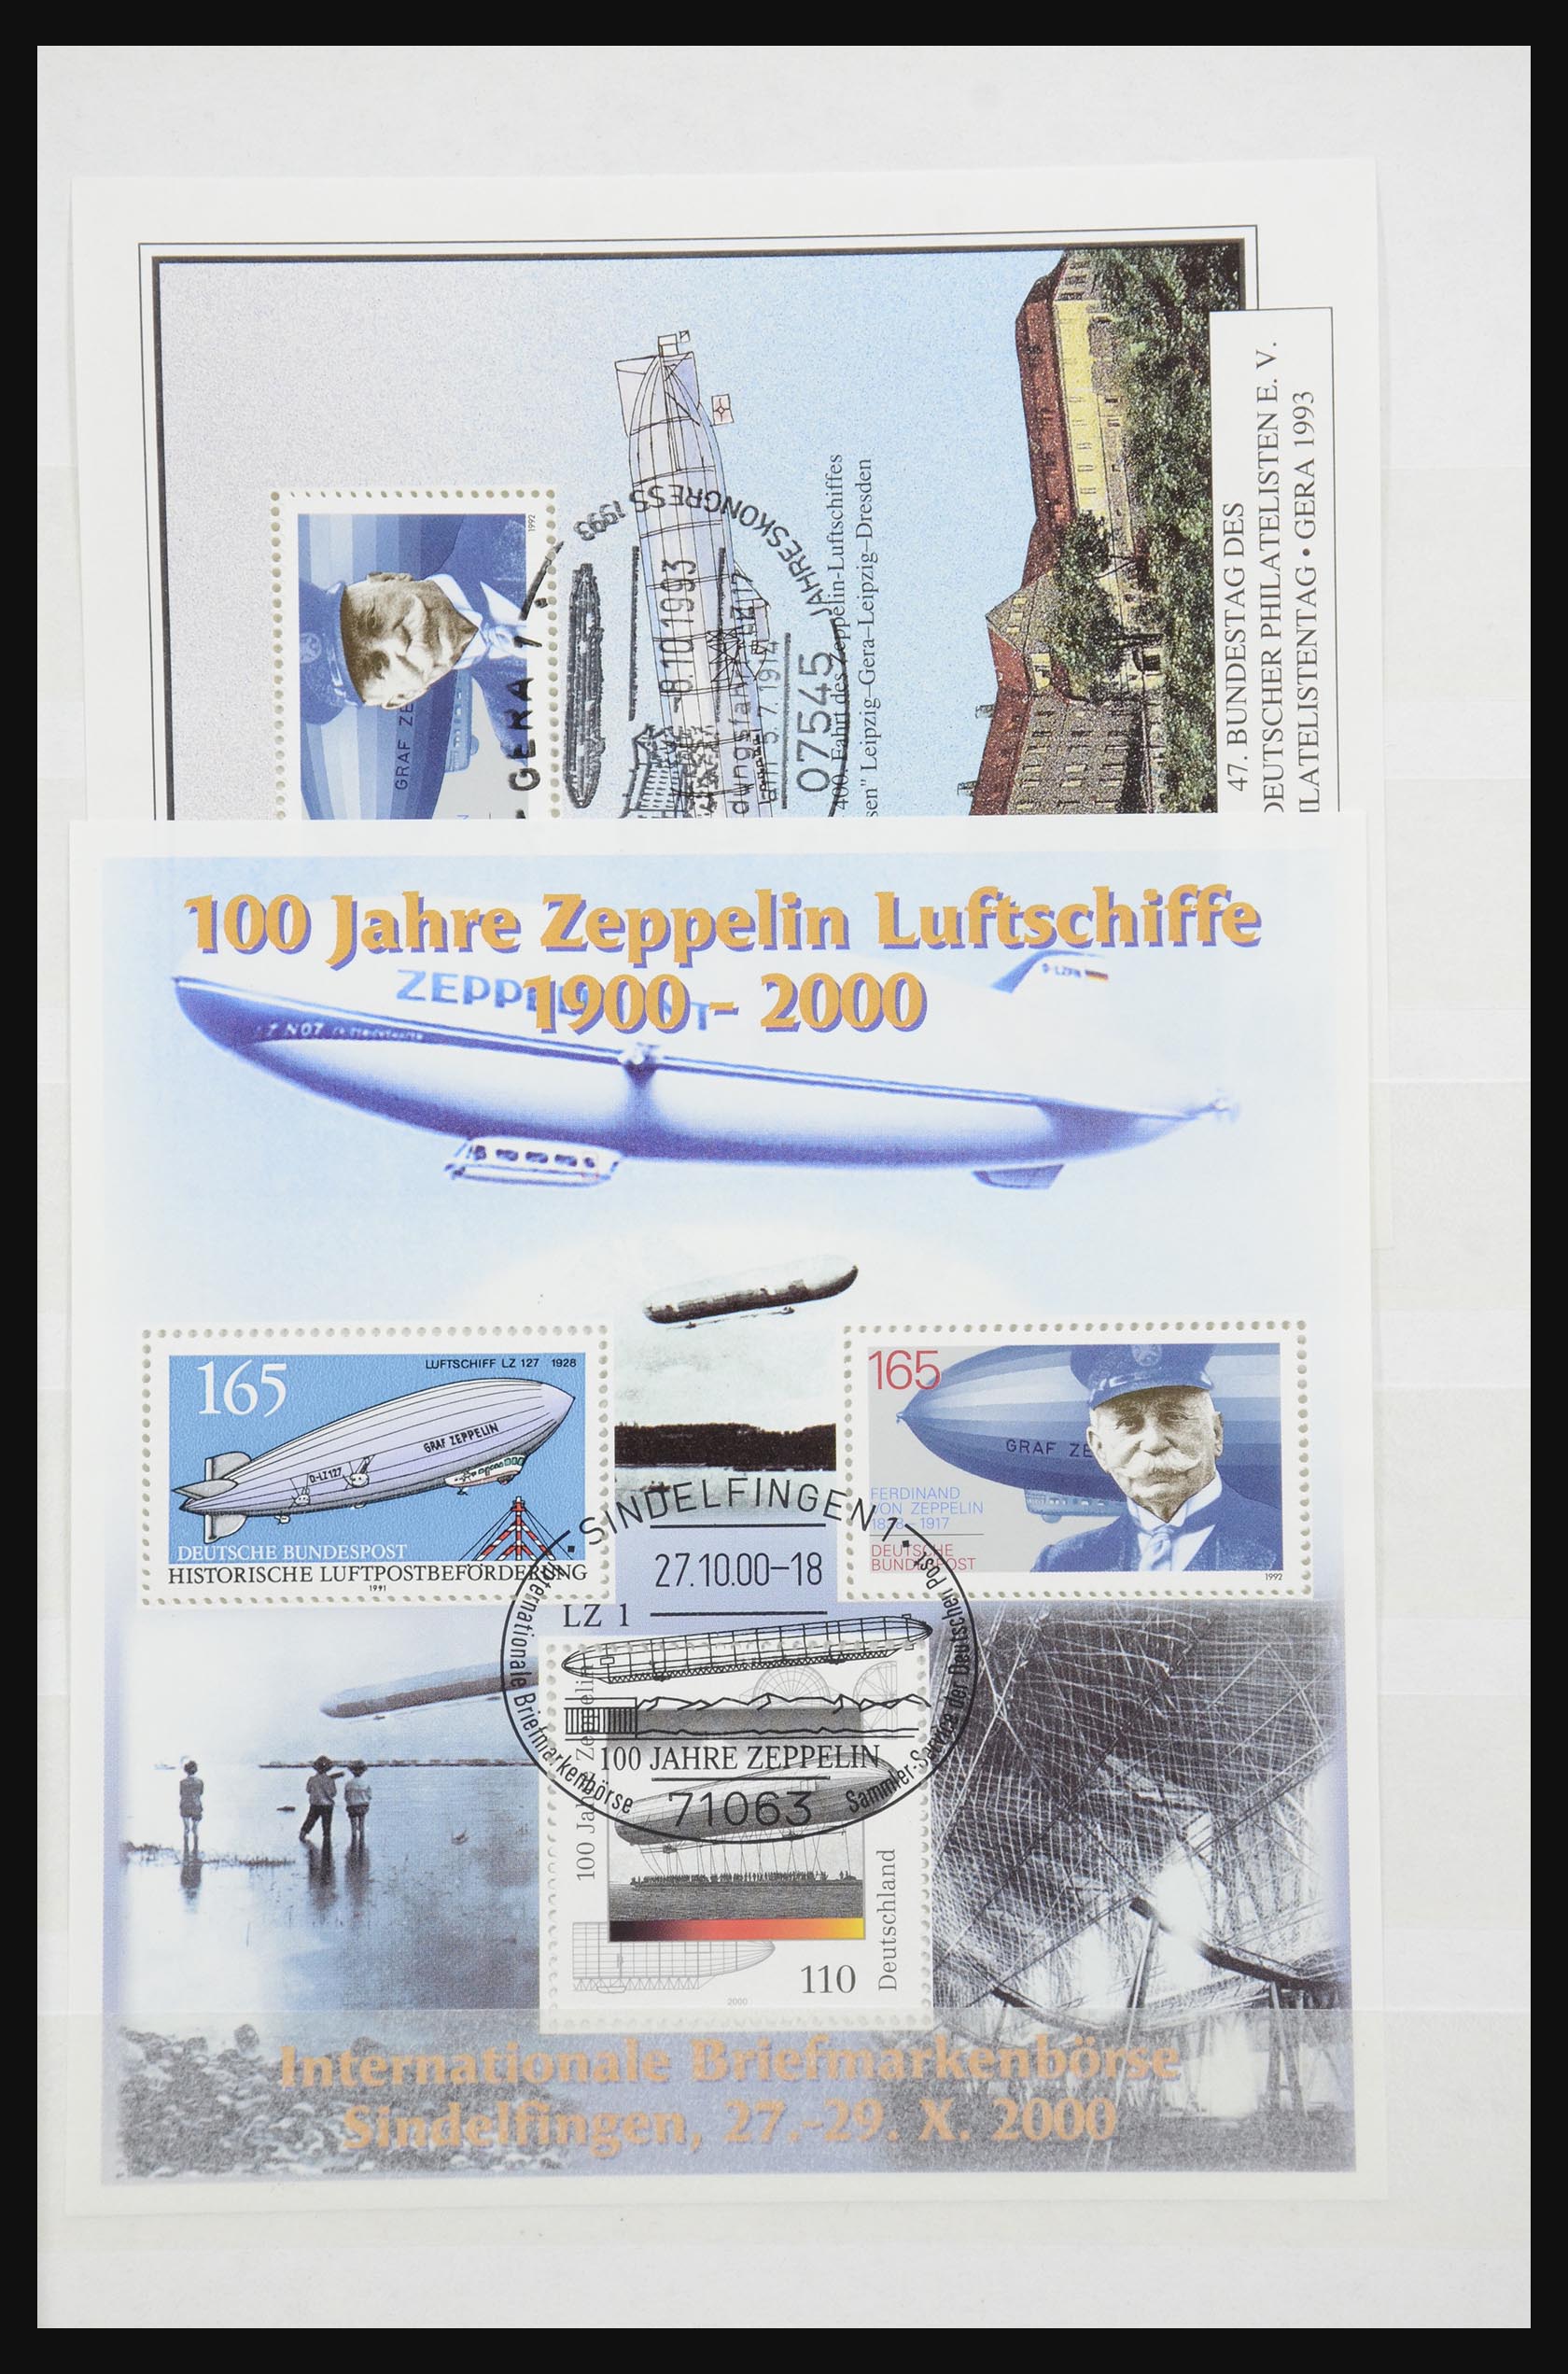 32050 039 - 32050 Bundespost speciale blokken 1980-2010.